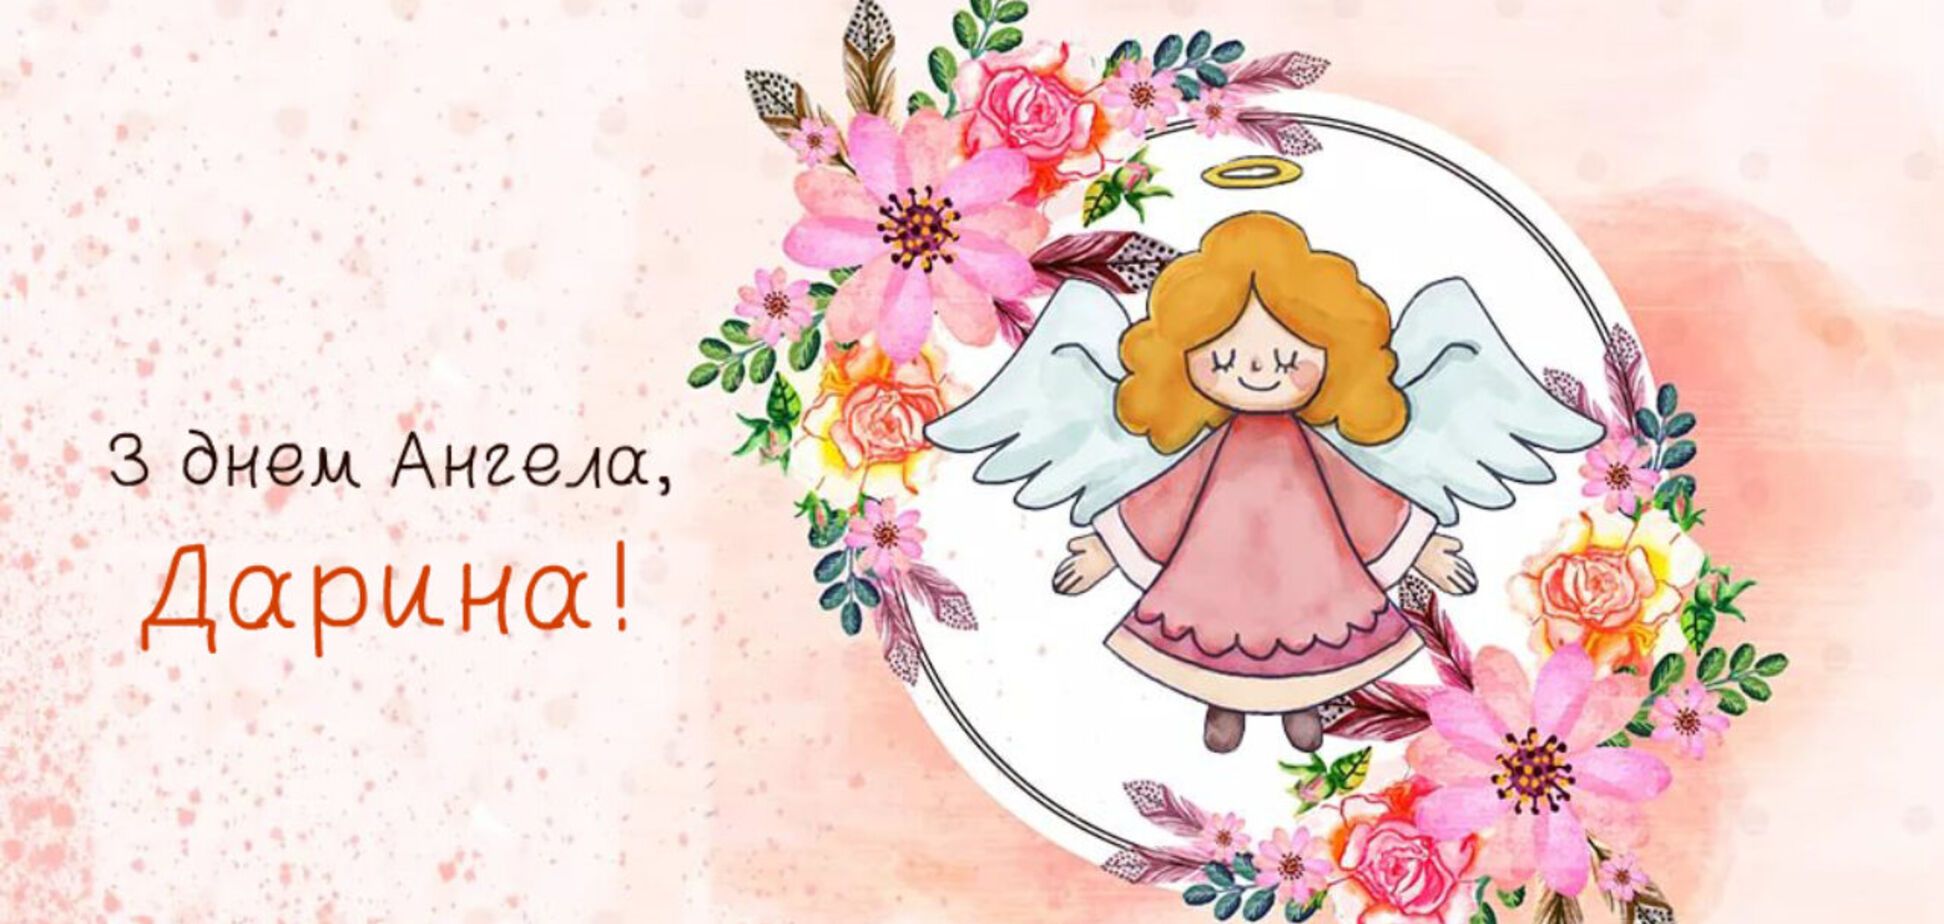 День ангела Дарьи: красивые стихи, открытки и видео с поздравлениями